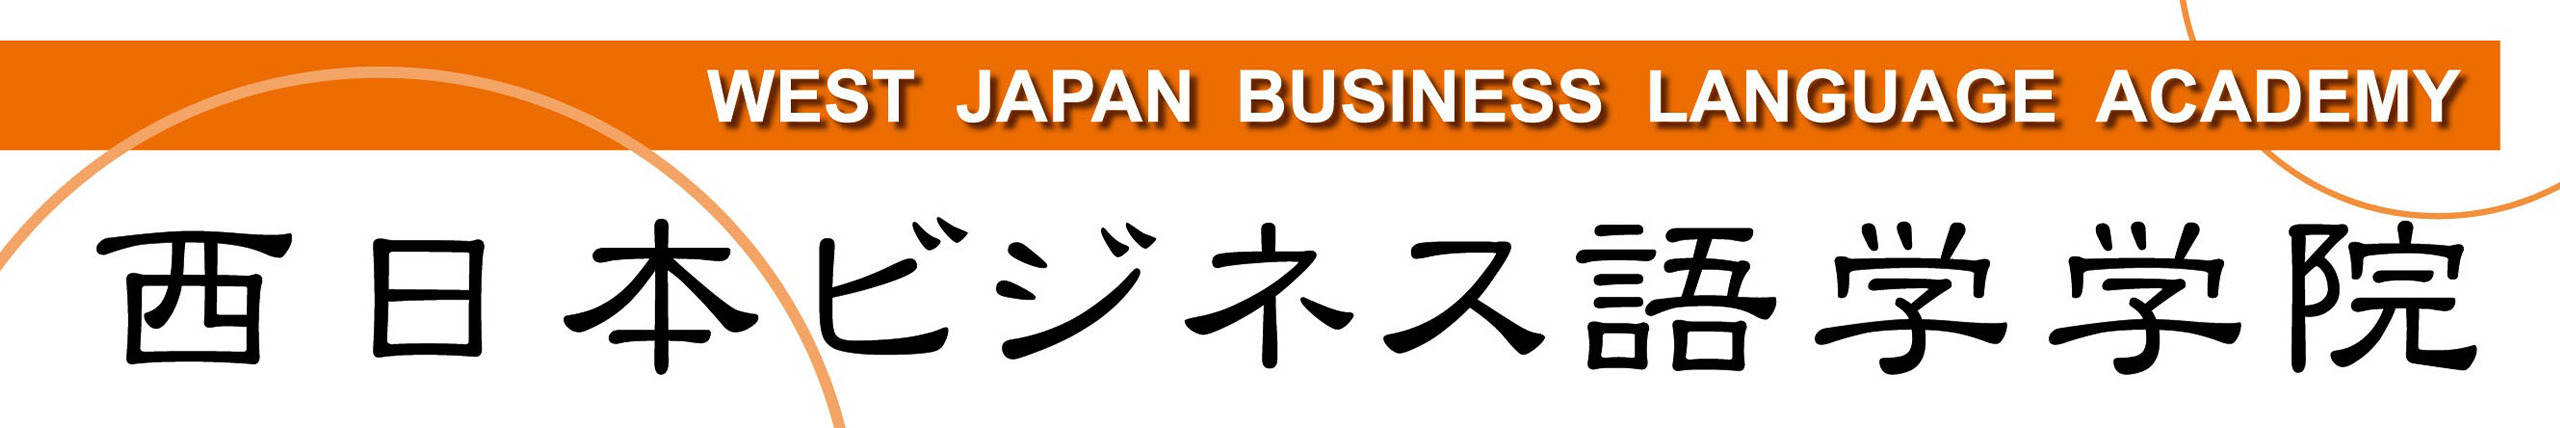 西日本ビジネス語学学院